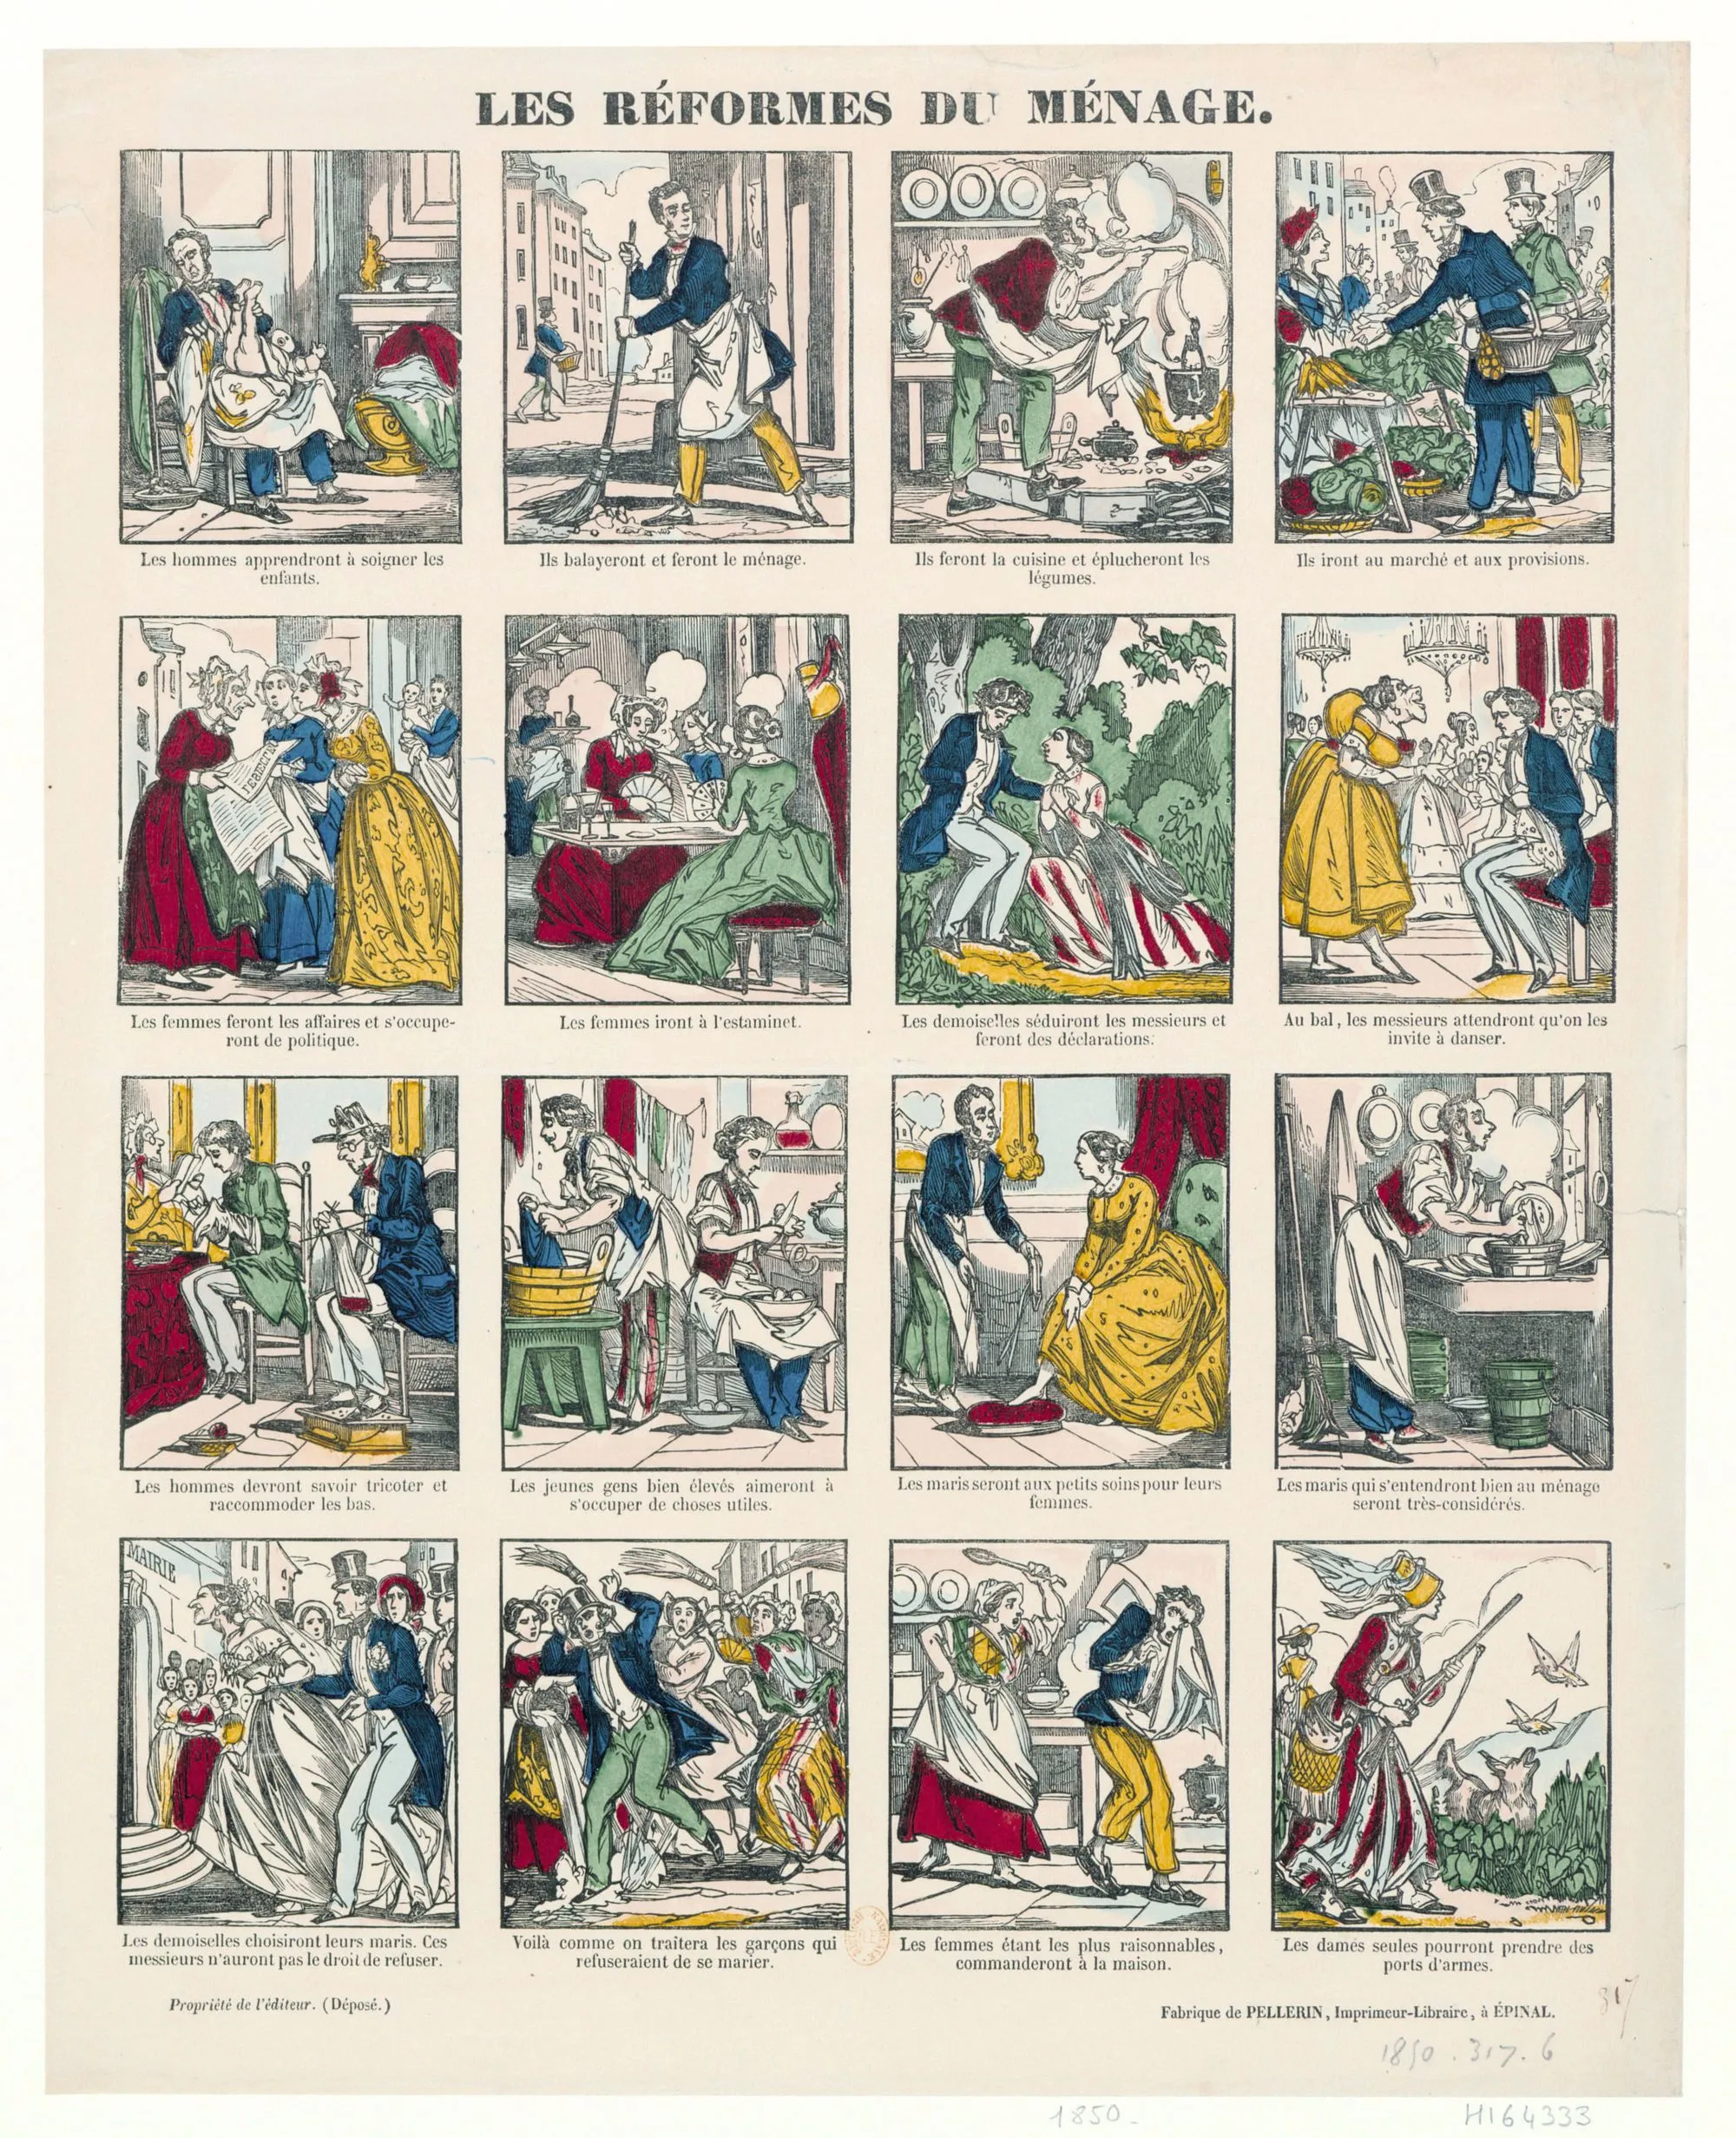 Les réformes du ménage, 1850, estampe populaire, BnF, Paris.